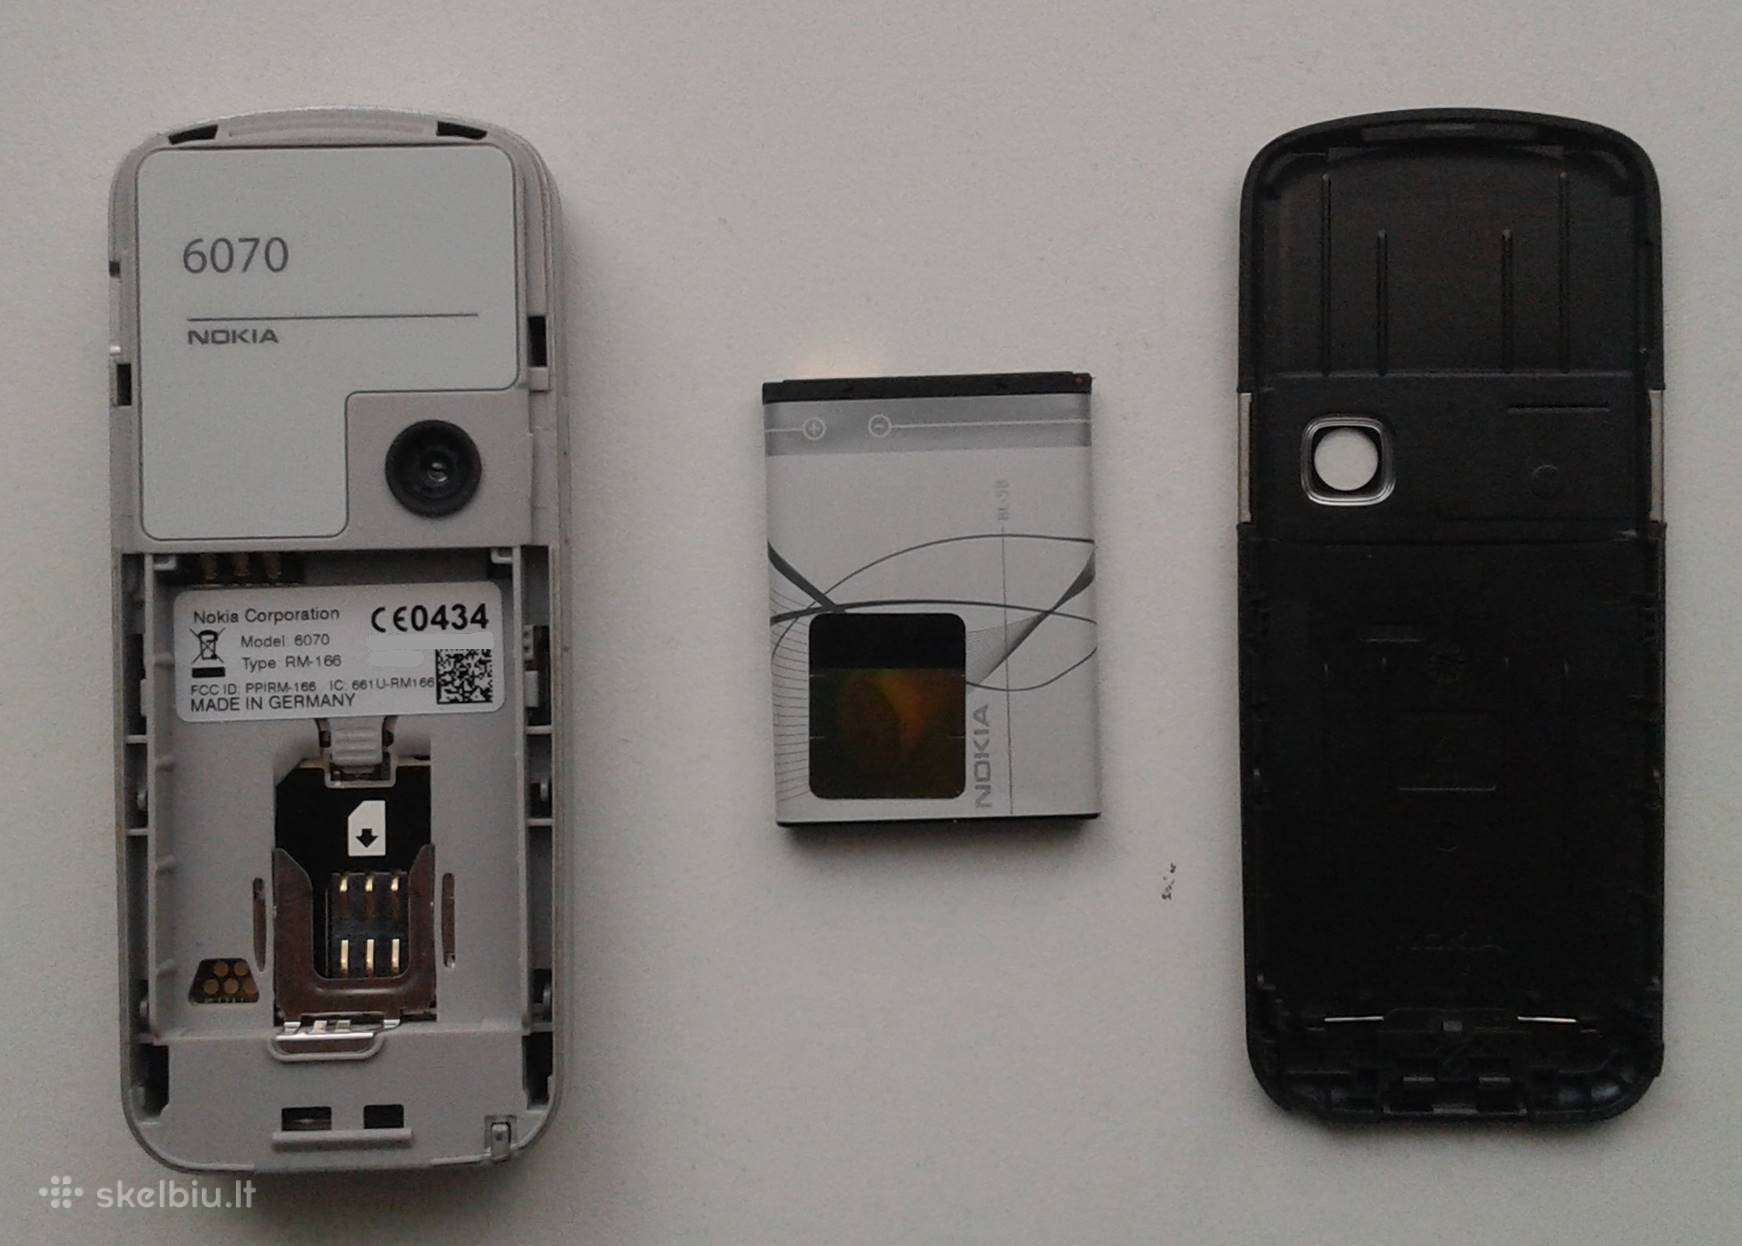 Nokia 6070, būklė ideali, komplekte tai kas nuotra - Skelbiu.lt